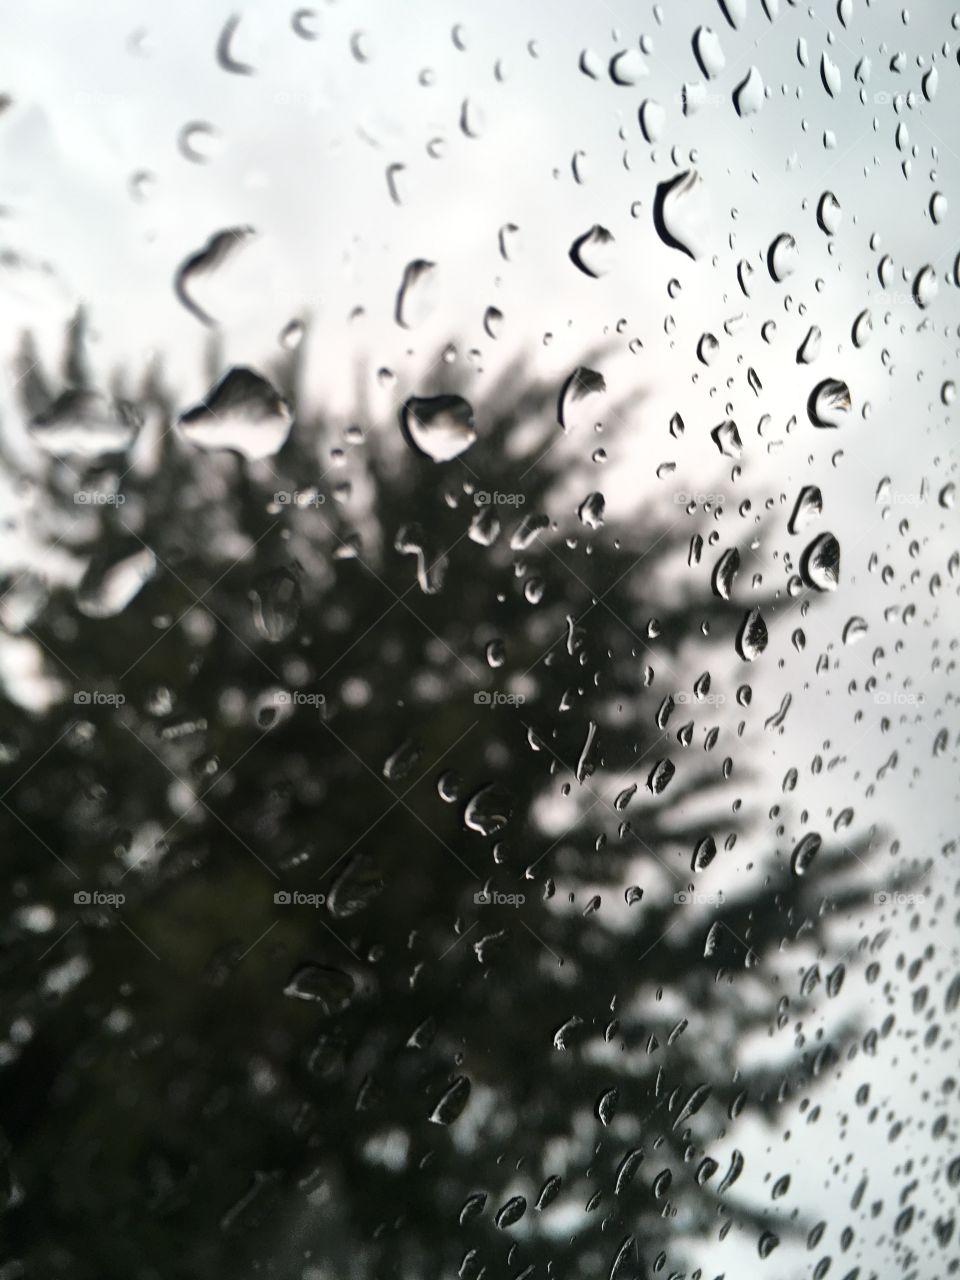 Rainy Day